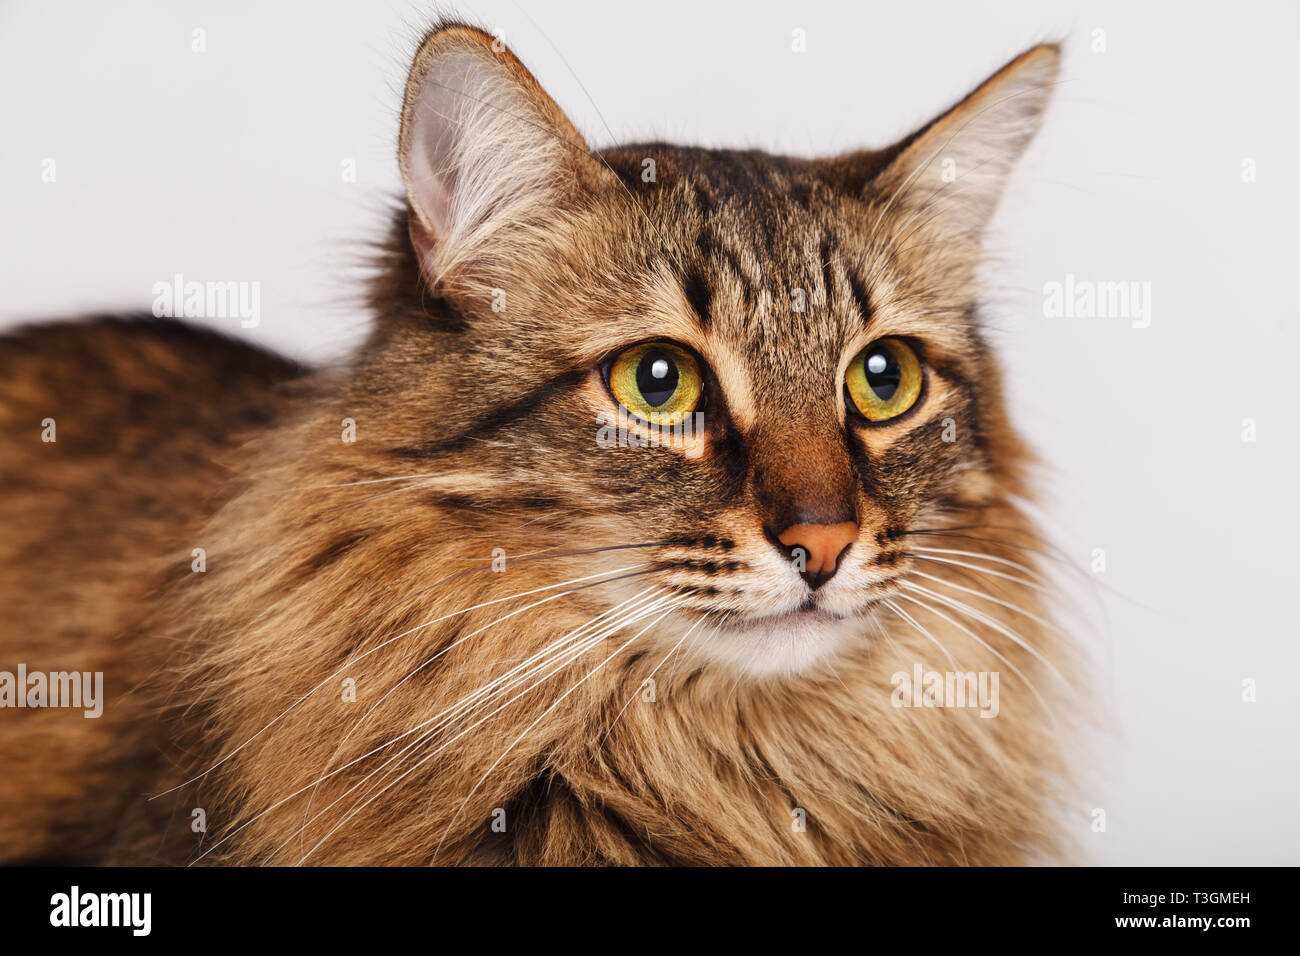 Grau tabby Furry süße Katze liegend auf einer hellen Wand Hintergrund, close-up. Gestreifte flauschige Katze mit einem langen Schnurrbart portrait. Stockfoto